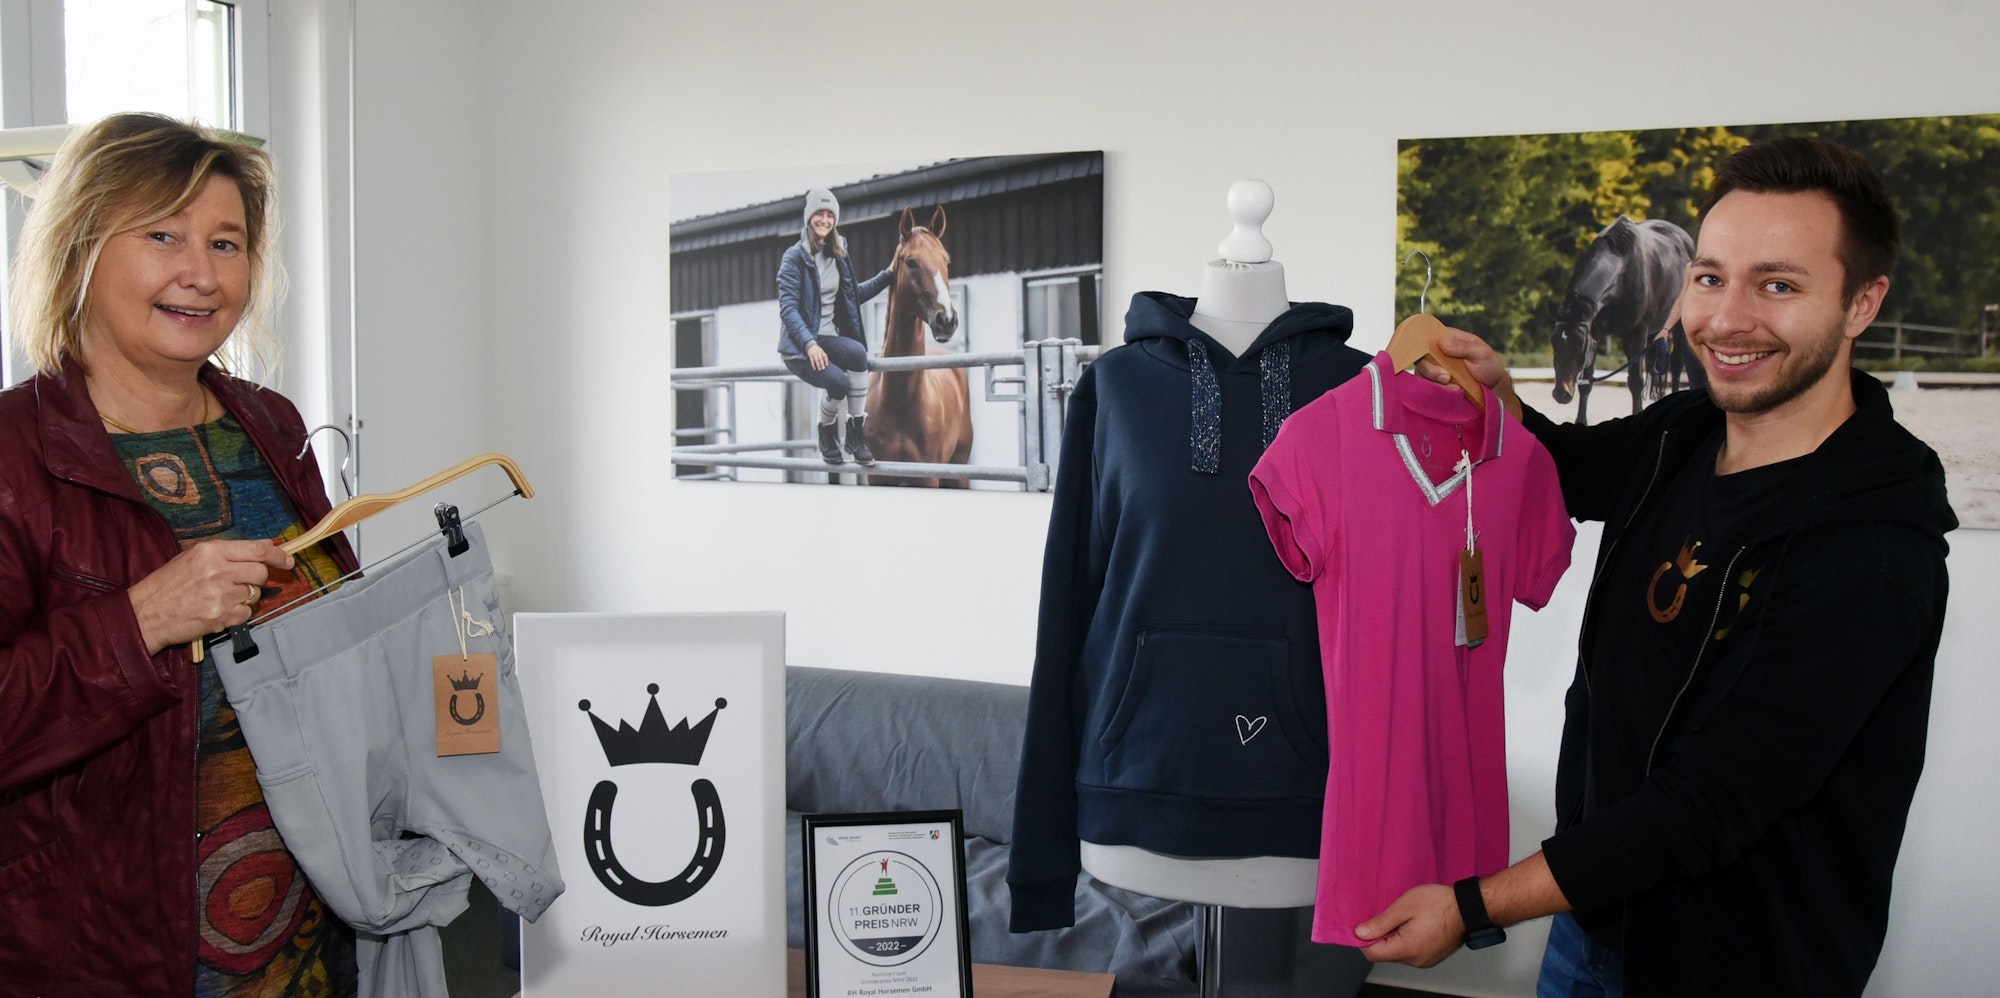 Susanne Roll, Gründer- und Technologiezentrum Gummersbach, und Robin Schuster, Mitgründer von Royal Horsemen, zeigen Reitkleidung.